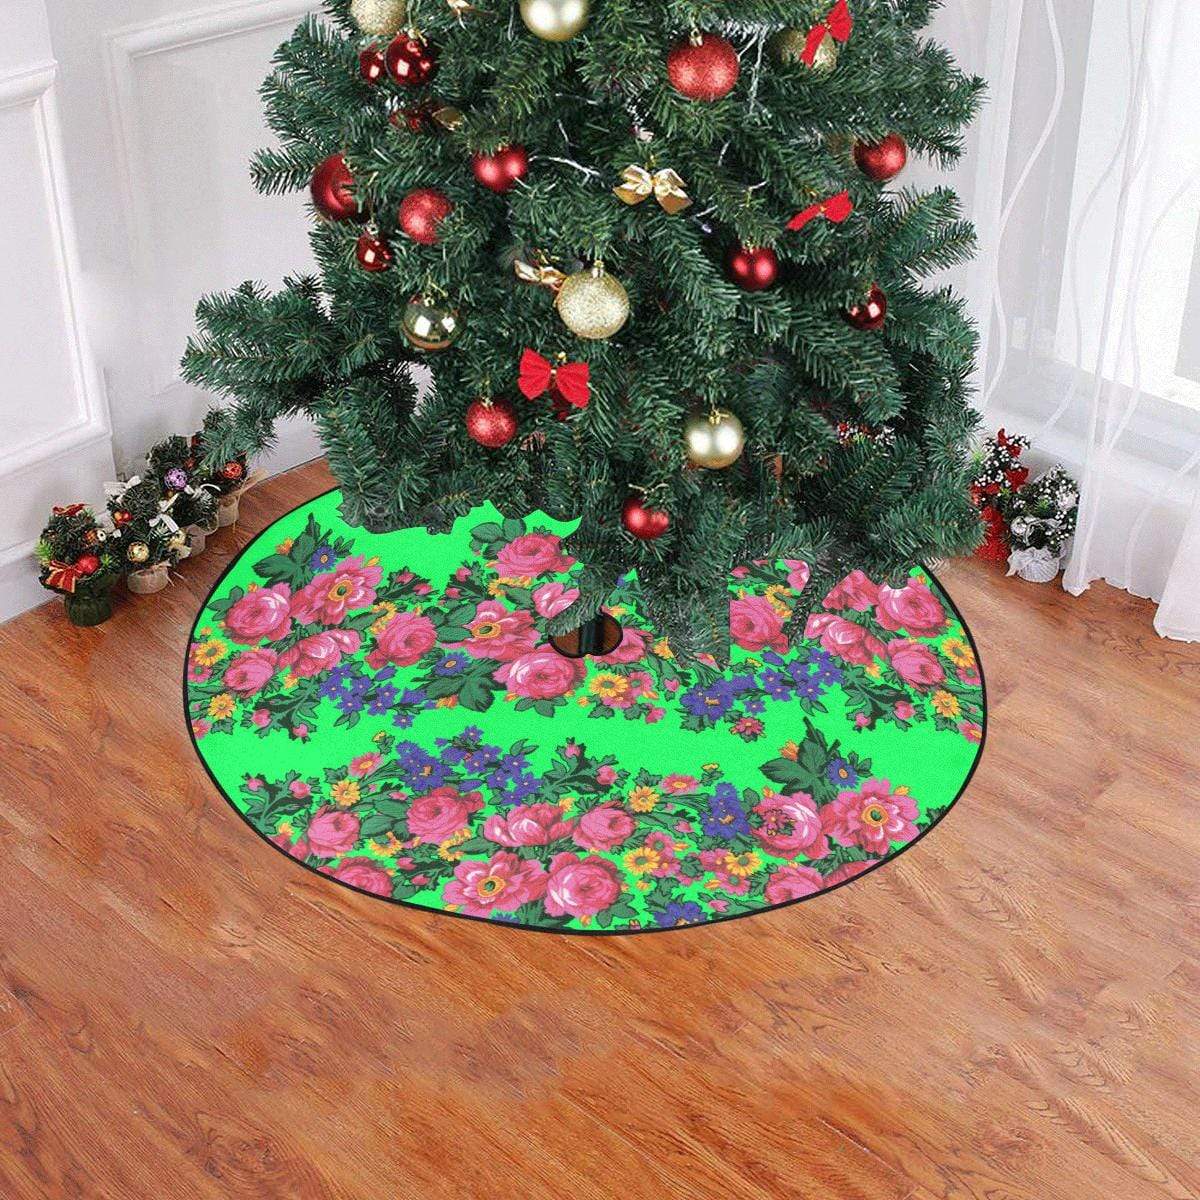 Kokum's Revenge Green Christmas Tree Skirt 47" x 47" Christmas Tree Skirt e-joyer 